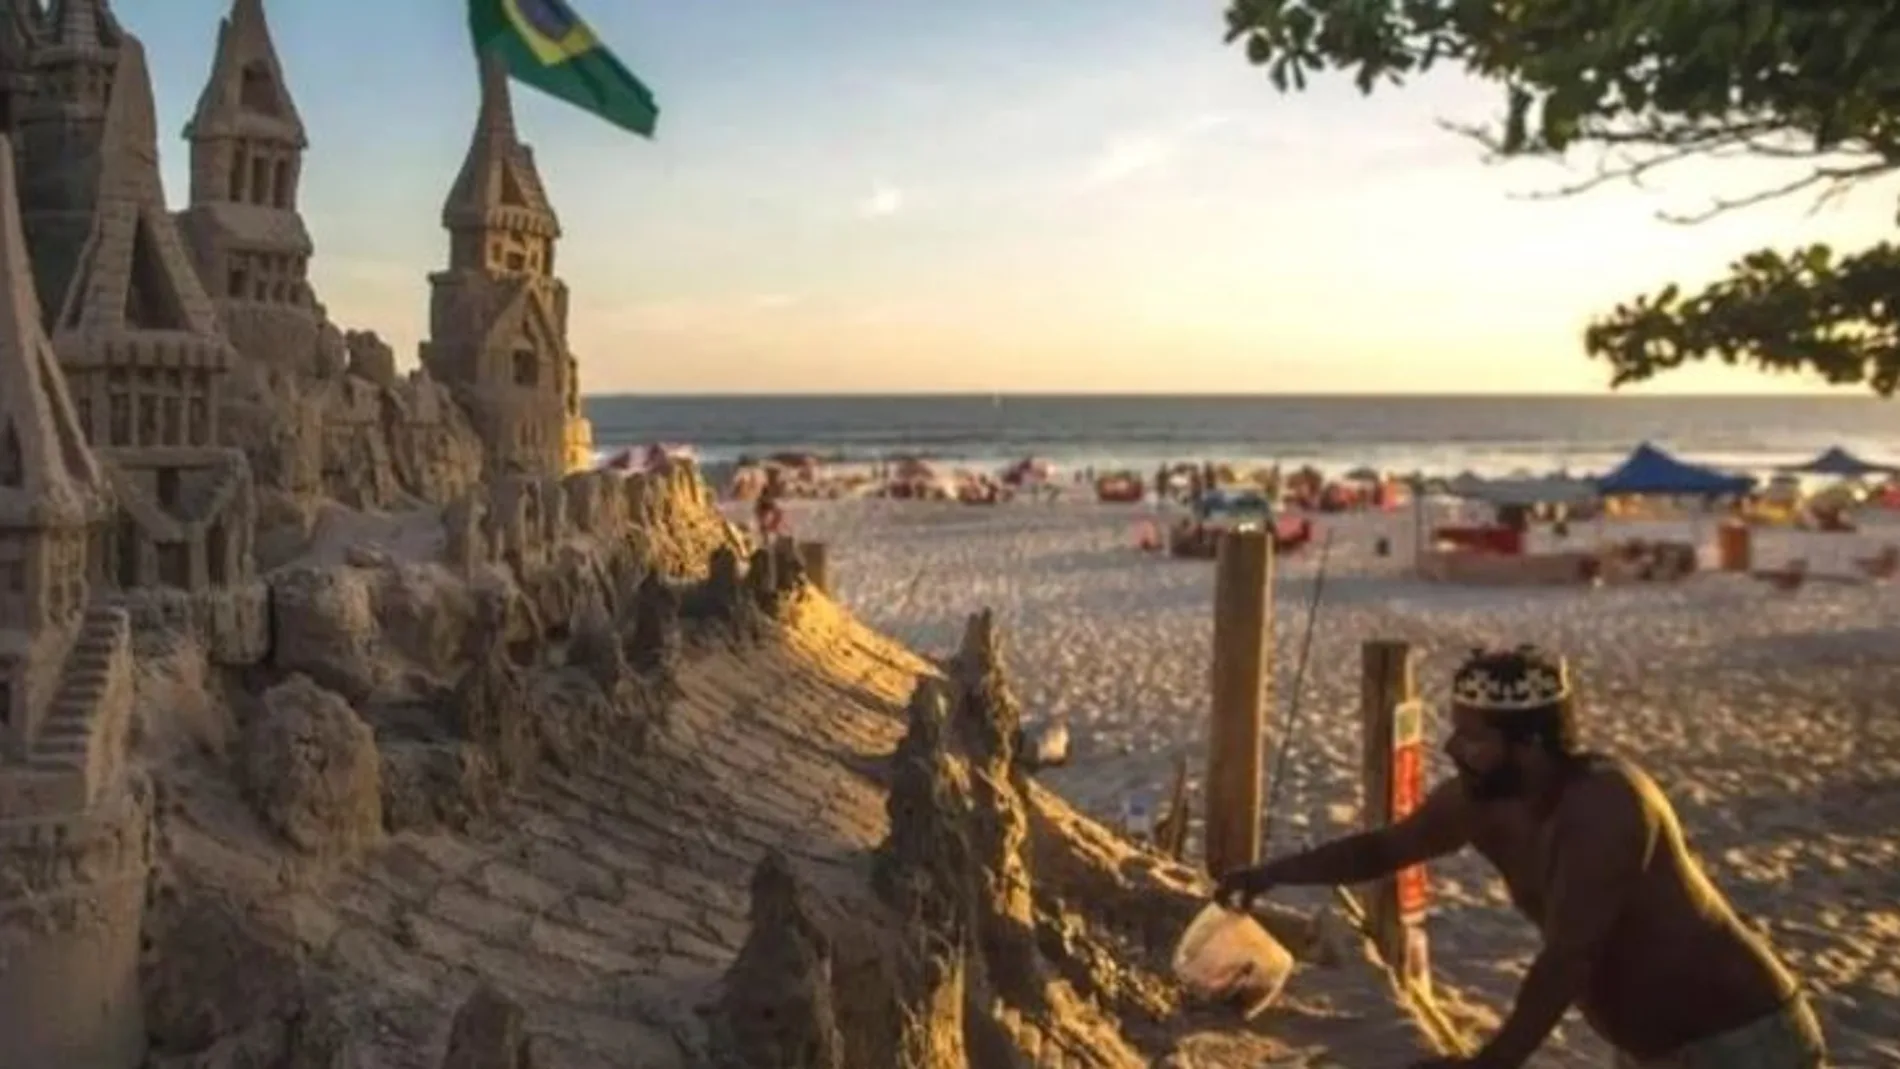 "El rey de la playa" cuida su castillo de arena todos los días, para que su fortaleza siga intacta